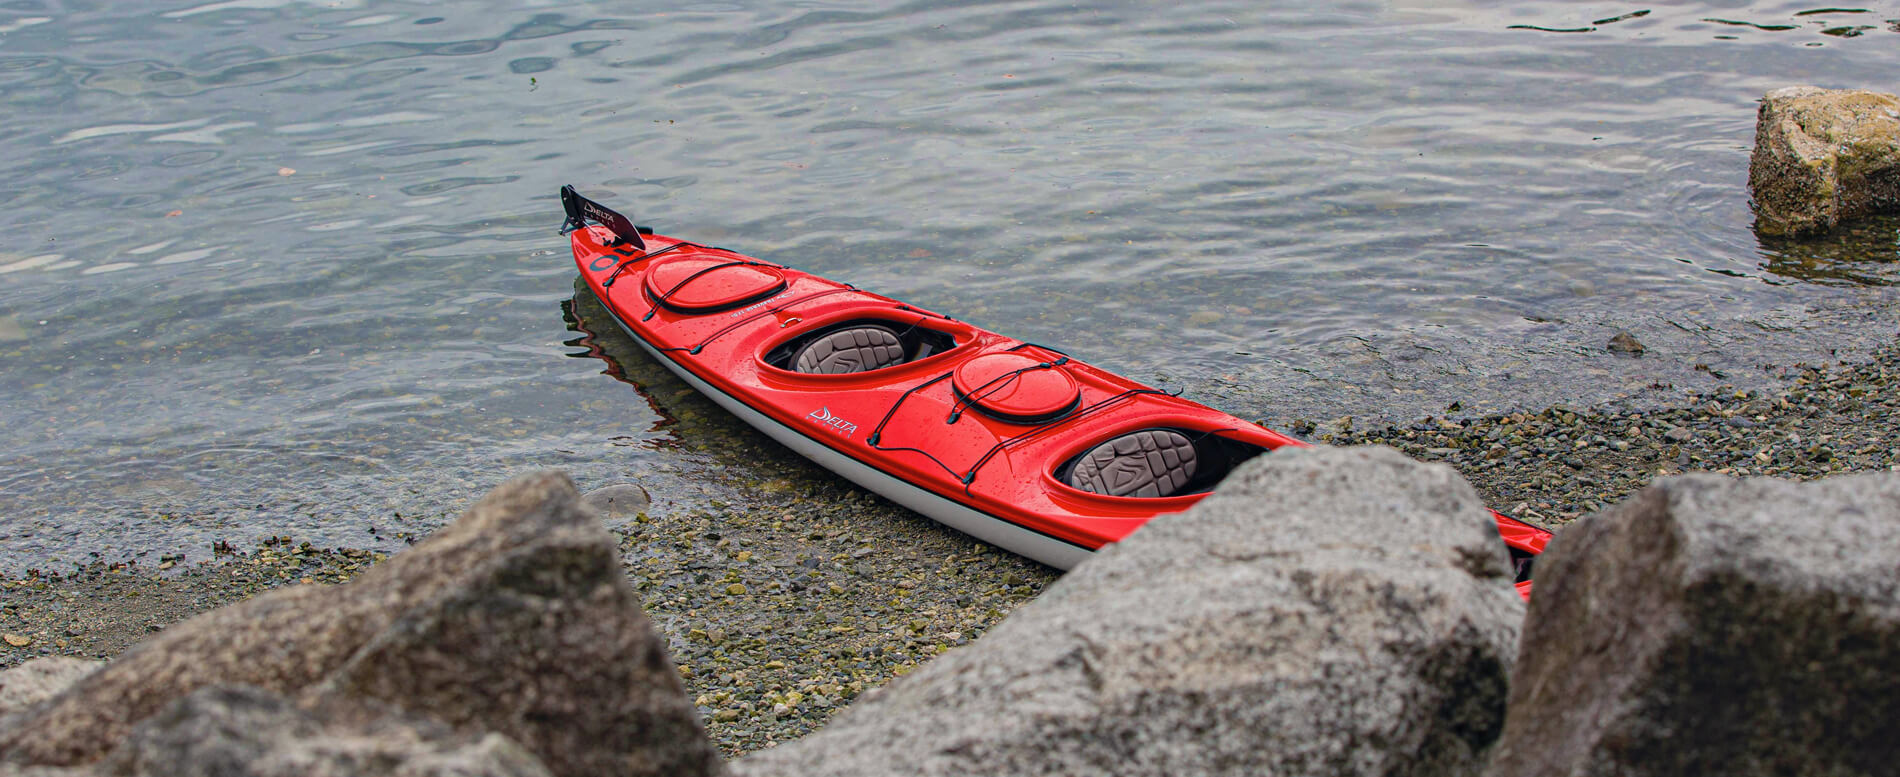 Red tandem kayak